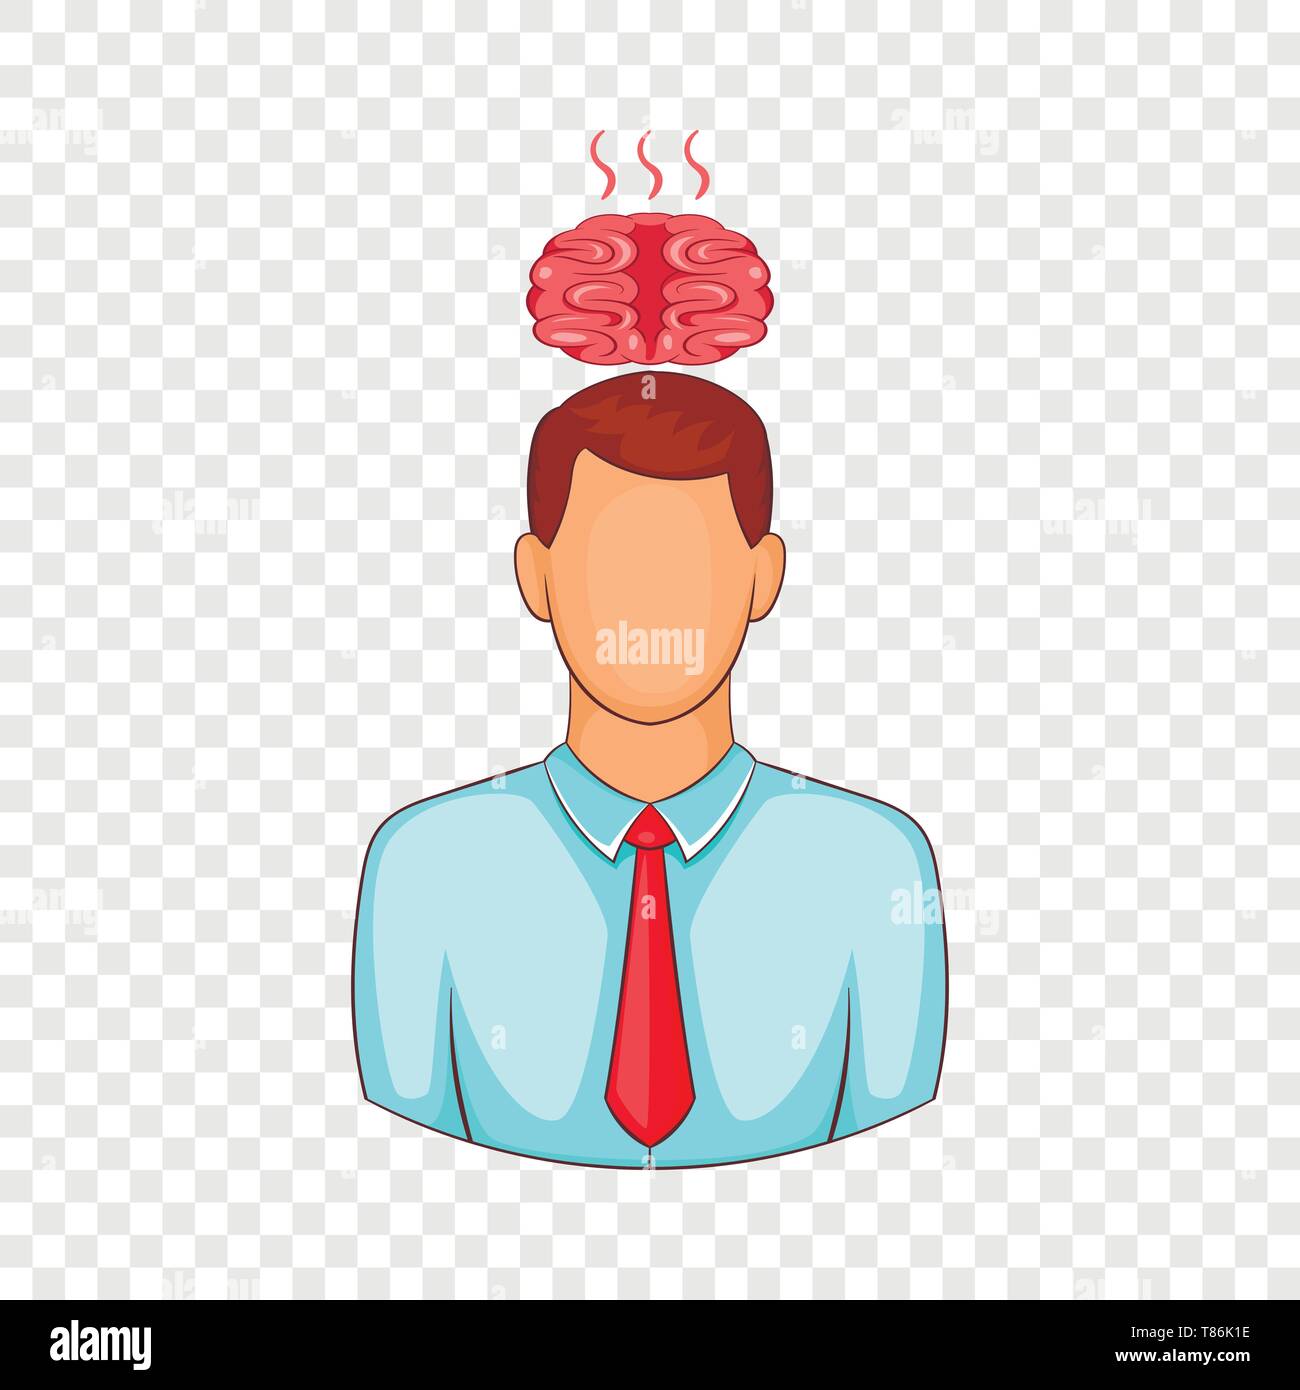 Man overheated brain icon, cartoon style Stock Vector